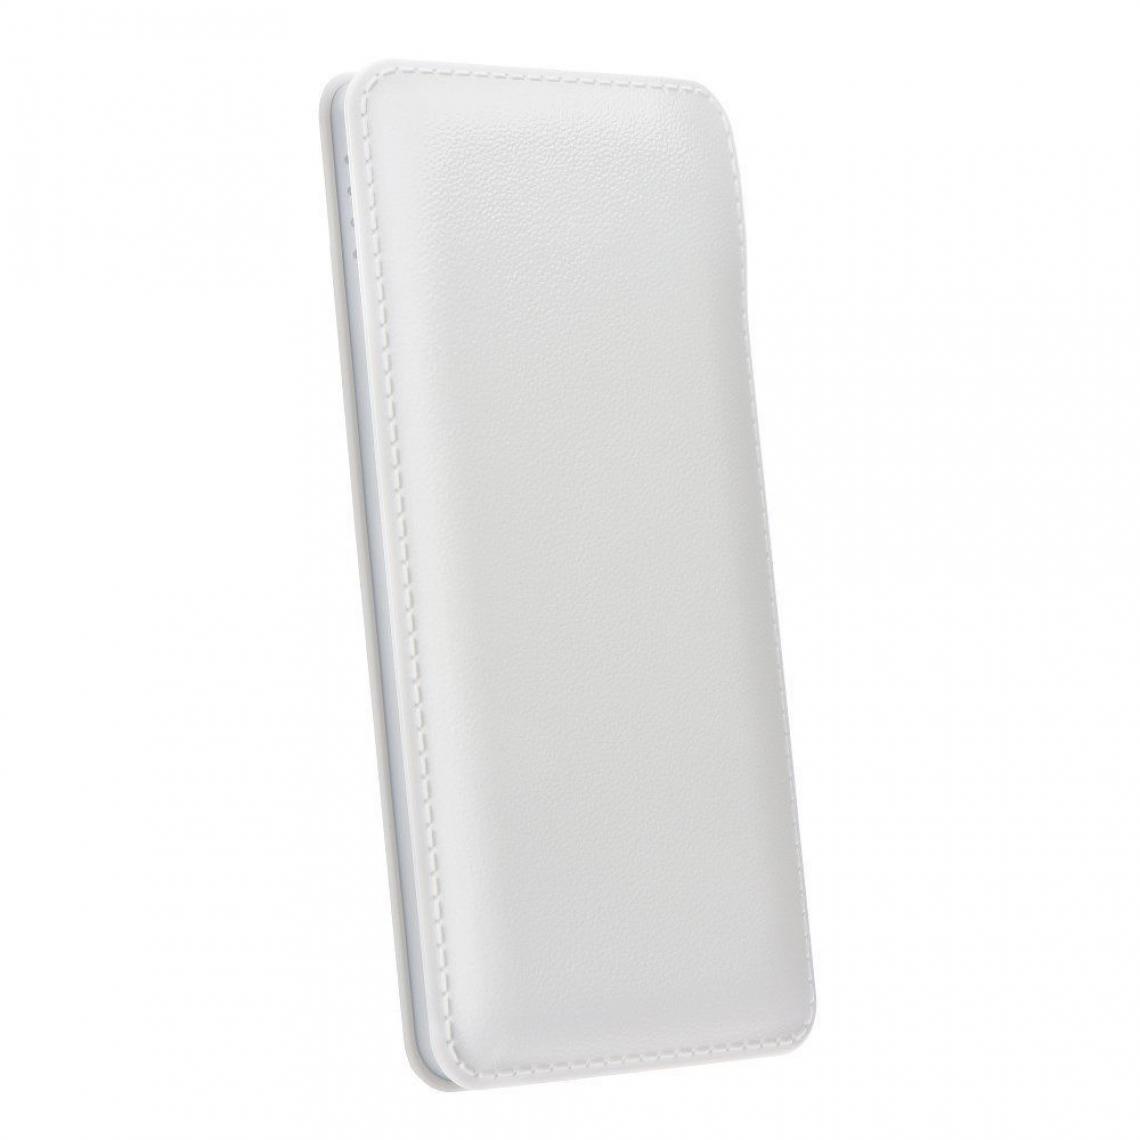 Ozzzo - Chargeur batterie externe 20000 mAh powerbank ozzzo blanc pour Huawei MediaPad M2 8.0" - Autres accessoires smartphone